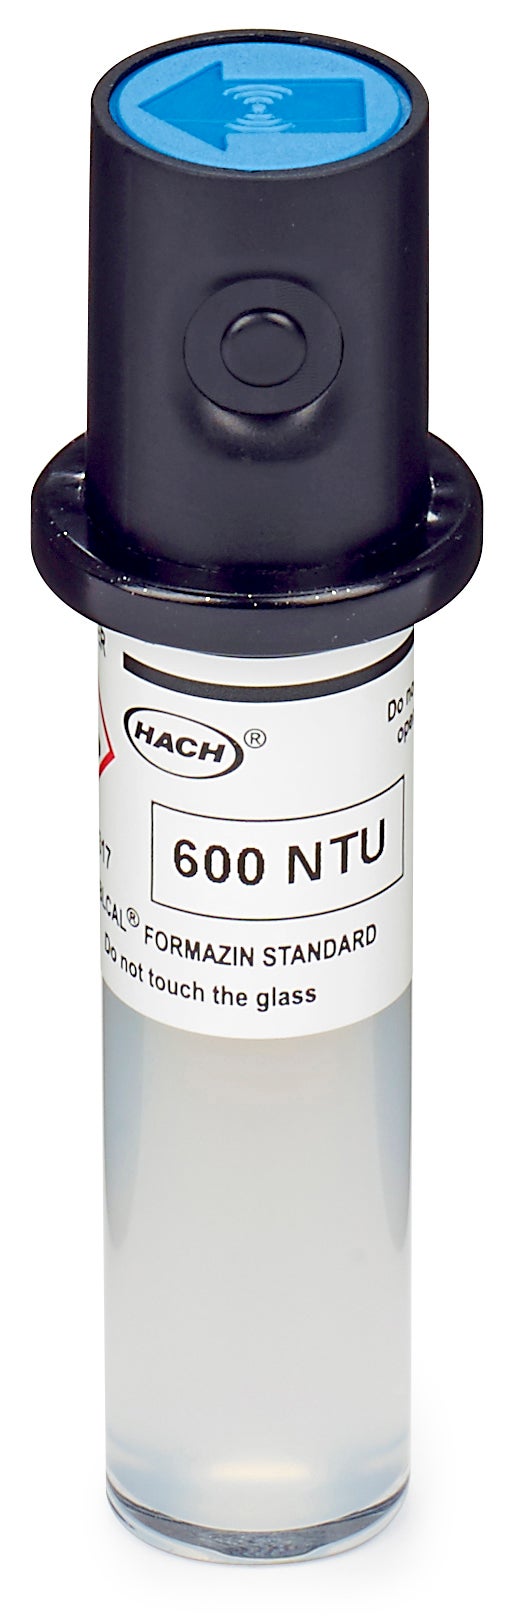 Stablcal-kalibratiekuvet, 600 NTU, zonder RFID voor TU5200, TU5300sc, en TU5400sc lasertroebelheidsmeter